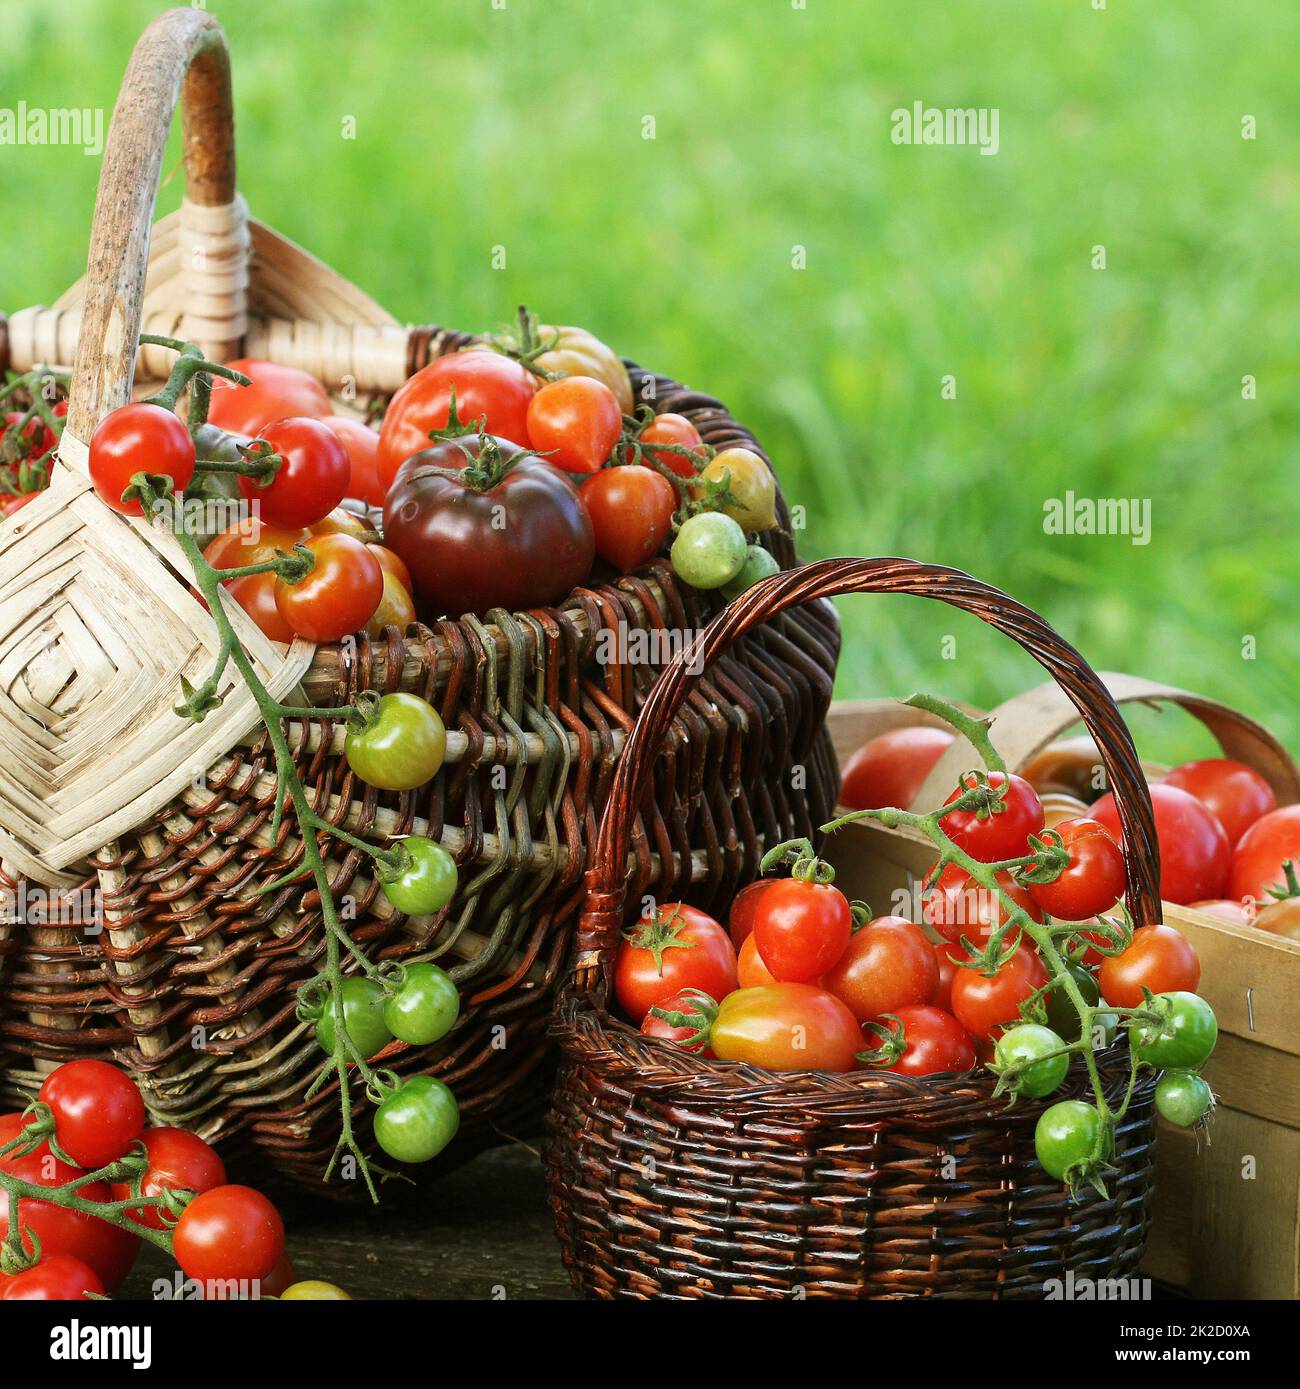 Reliquia de la variedad de tomate en cestas coloridas - tomate rojo, el amarillo, el naranja. Cosecha cocinar vegetales concepción Foto de stock